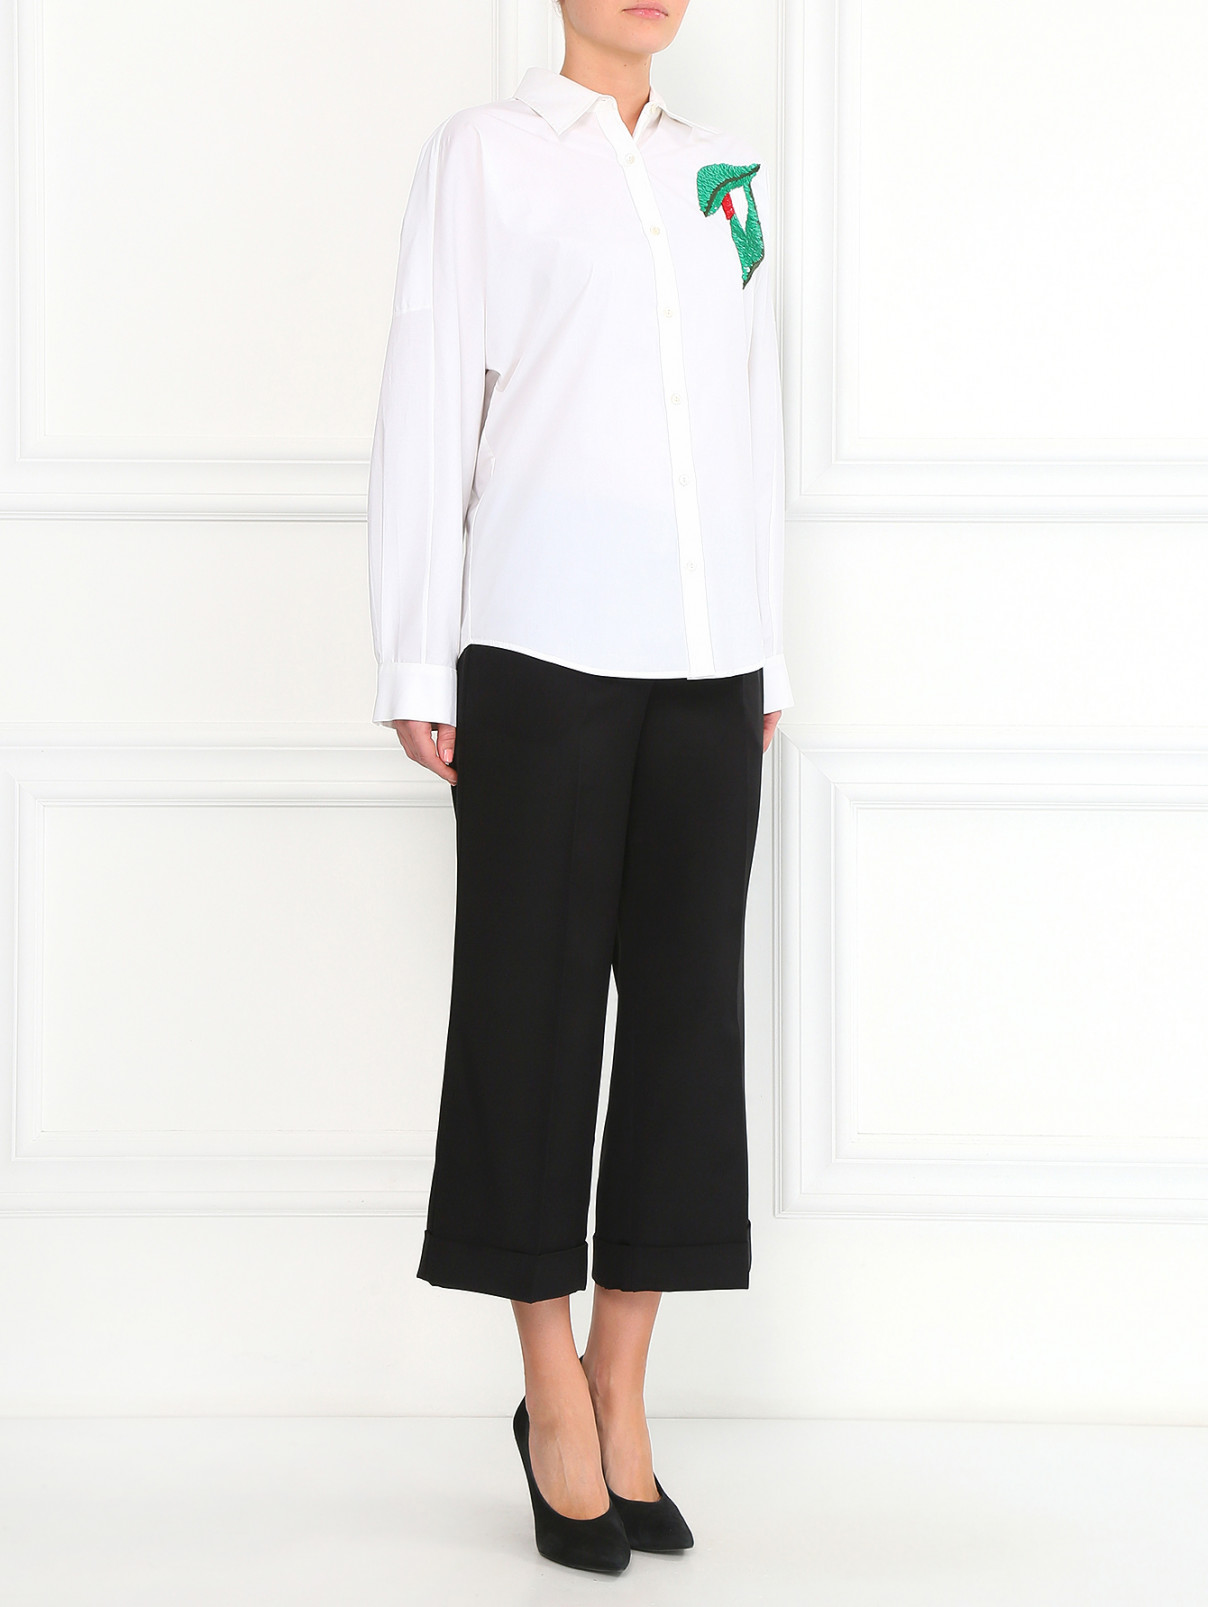 Блуза из хлопка, декорированная пайетками P.A.R.O.S.H.  –  Модель Общий вид  – Цвет:  Белый